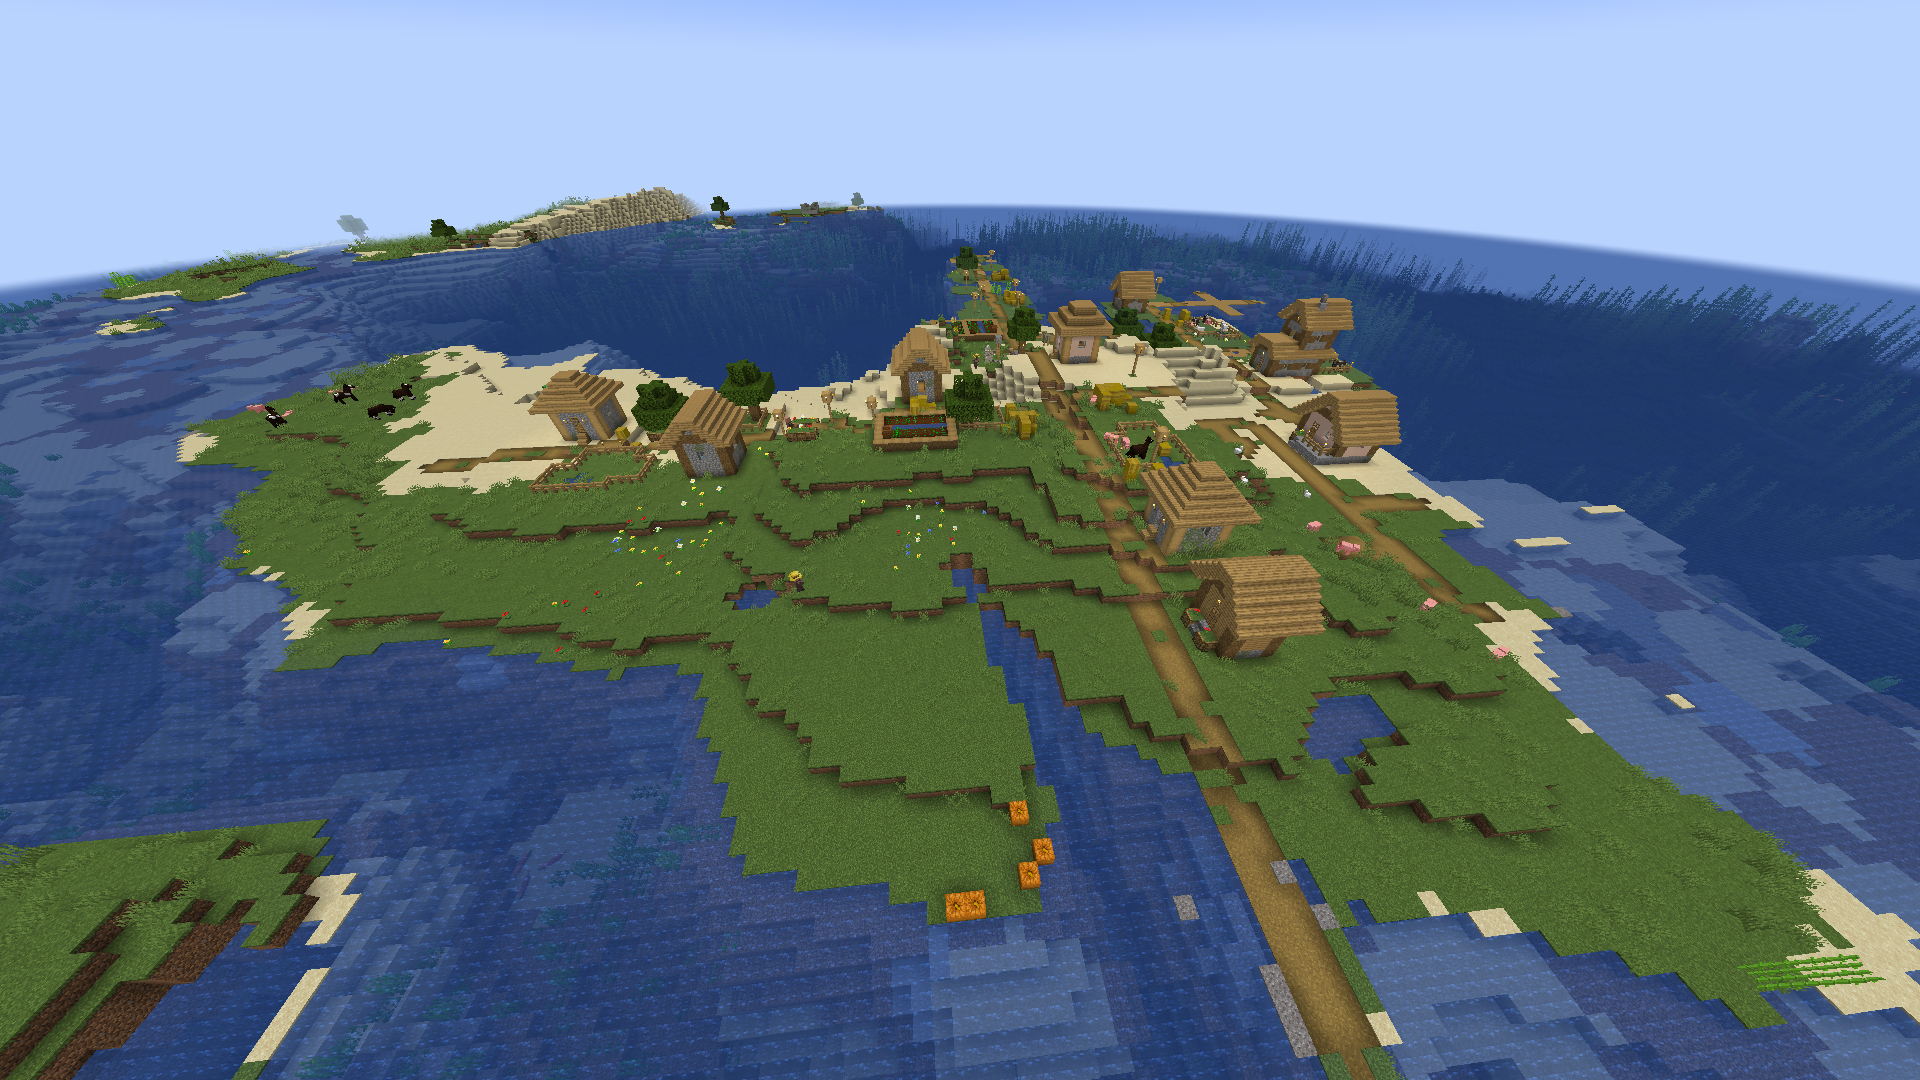 Minecraftdakı sahildən kənar bir çimərlik kəndi